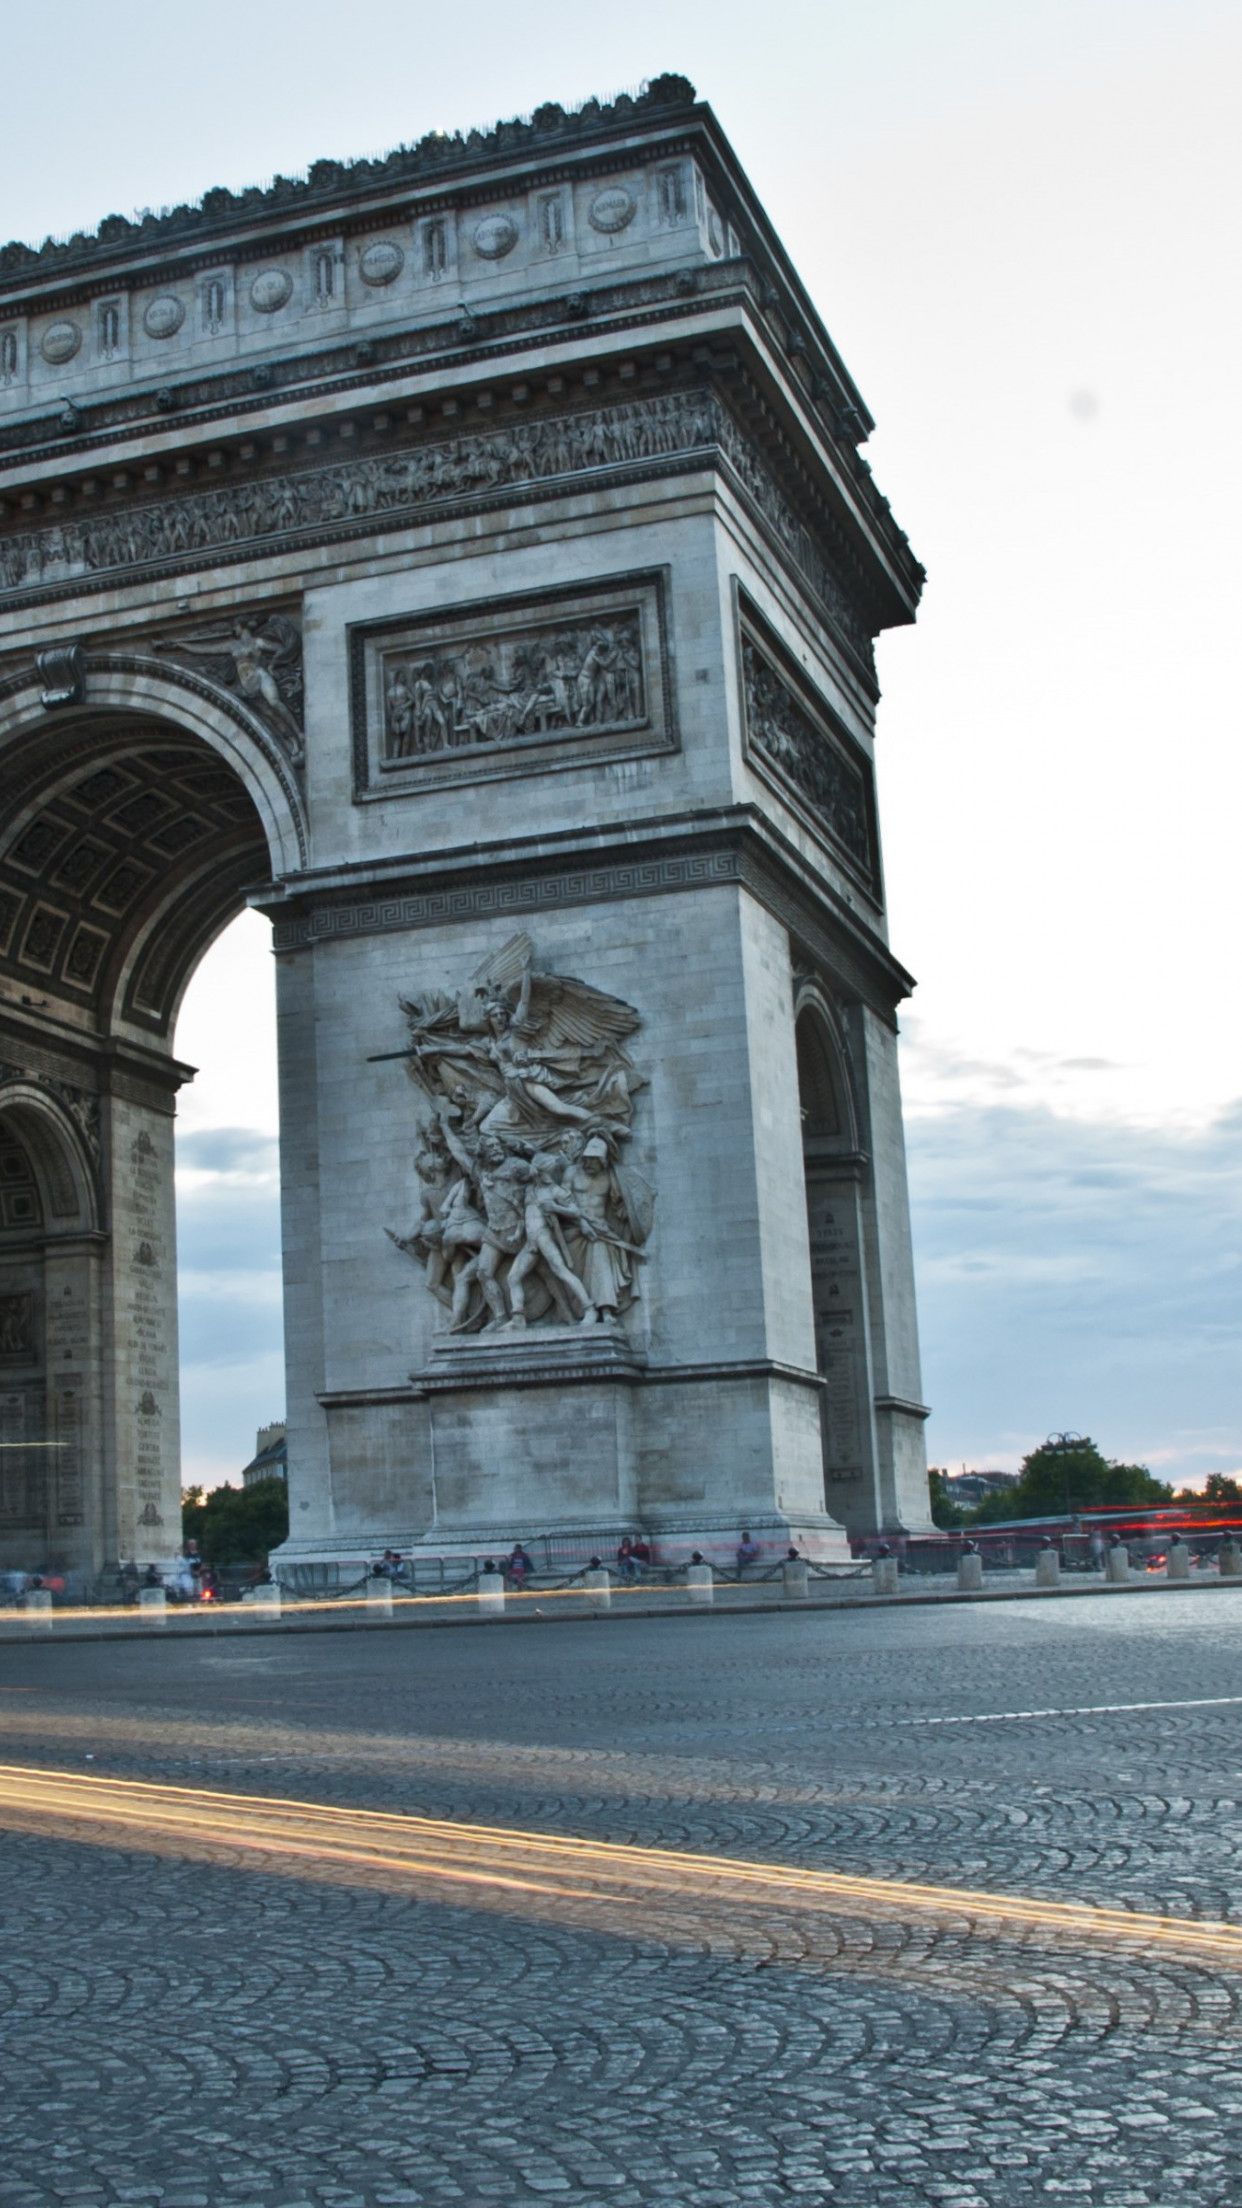 Download wallpaper: Arc de Triomphe from Paris 1242x2208